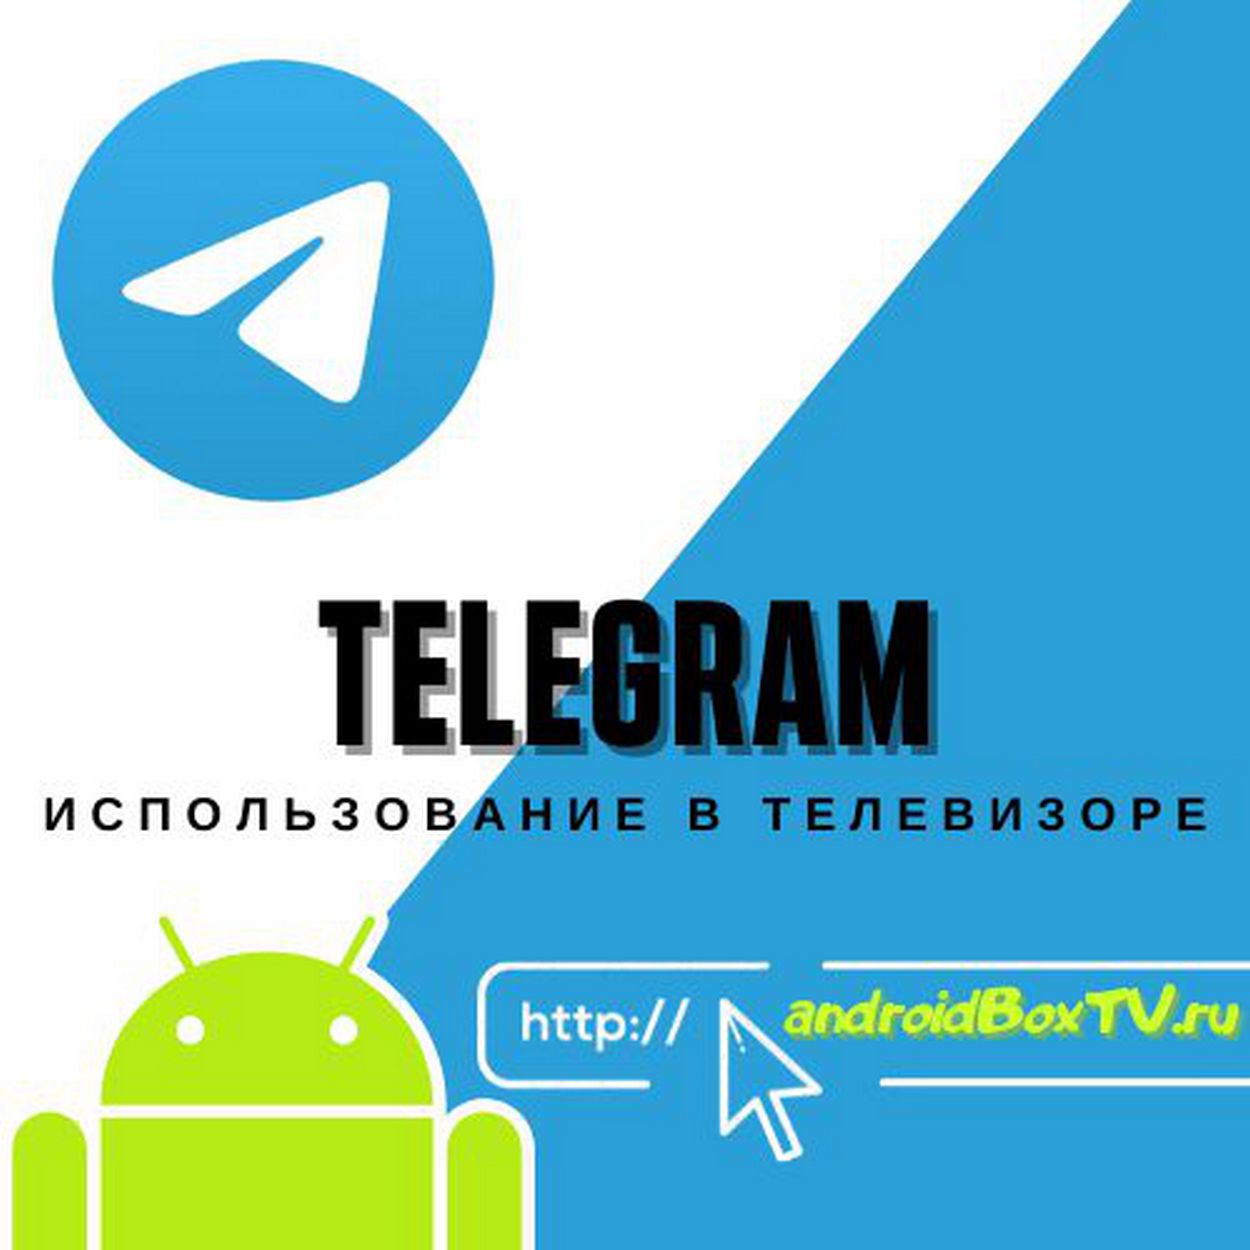 Установить телеграмм на телевизор андроид как (119) фото